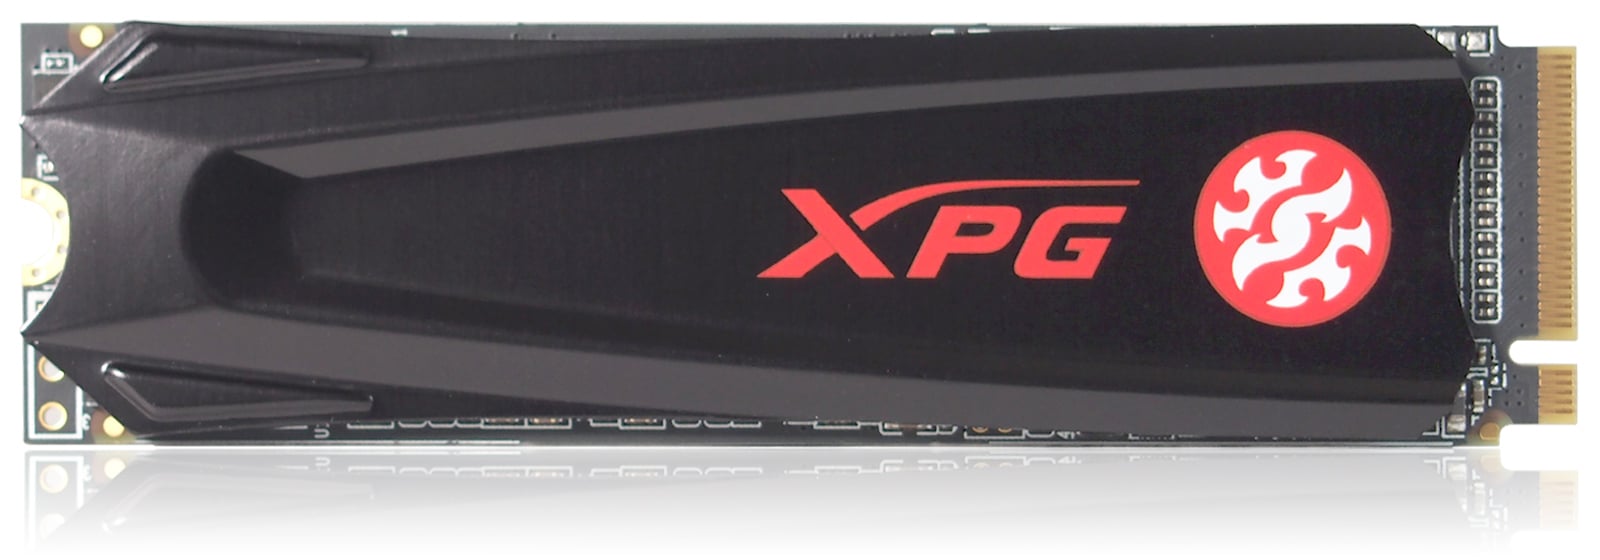 Xpg gammix s5. A-data XPG GAMMIX s5 тесты. SSD m2 NVME A data 512gb GAMMIX s5. Оперативная память XPG GAMMIX d10 2x8 GB набор. Характеристики 512 ГБ SSD M.2 накопитель ADATA XPG GAMMIX s5 [agammixs5-512gt-c].